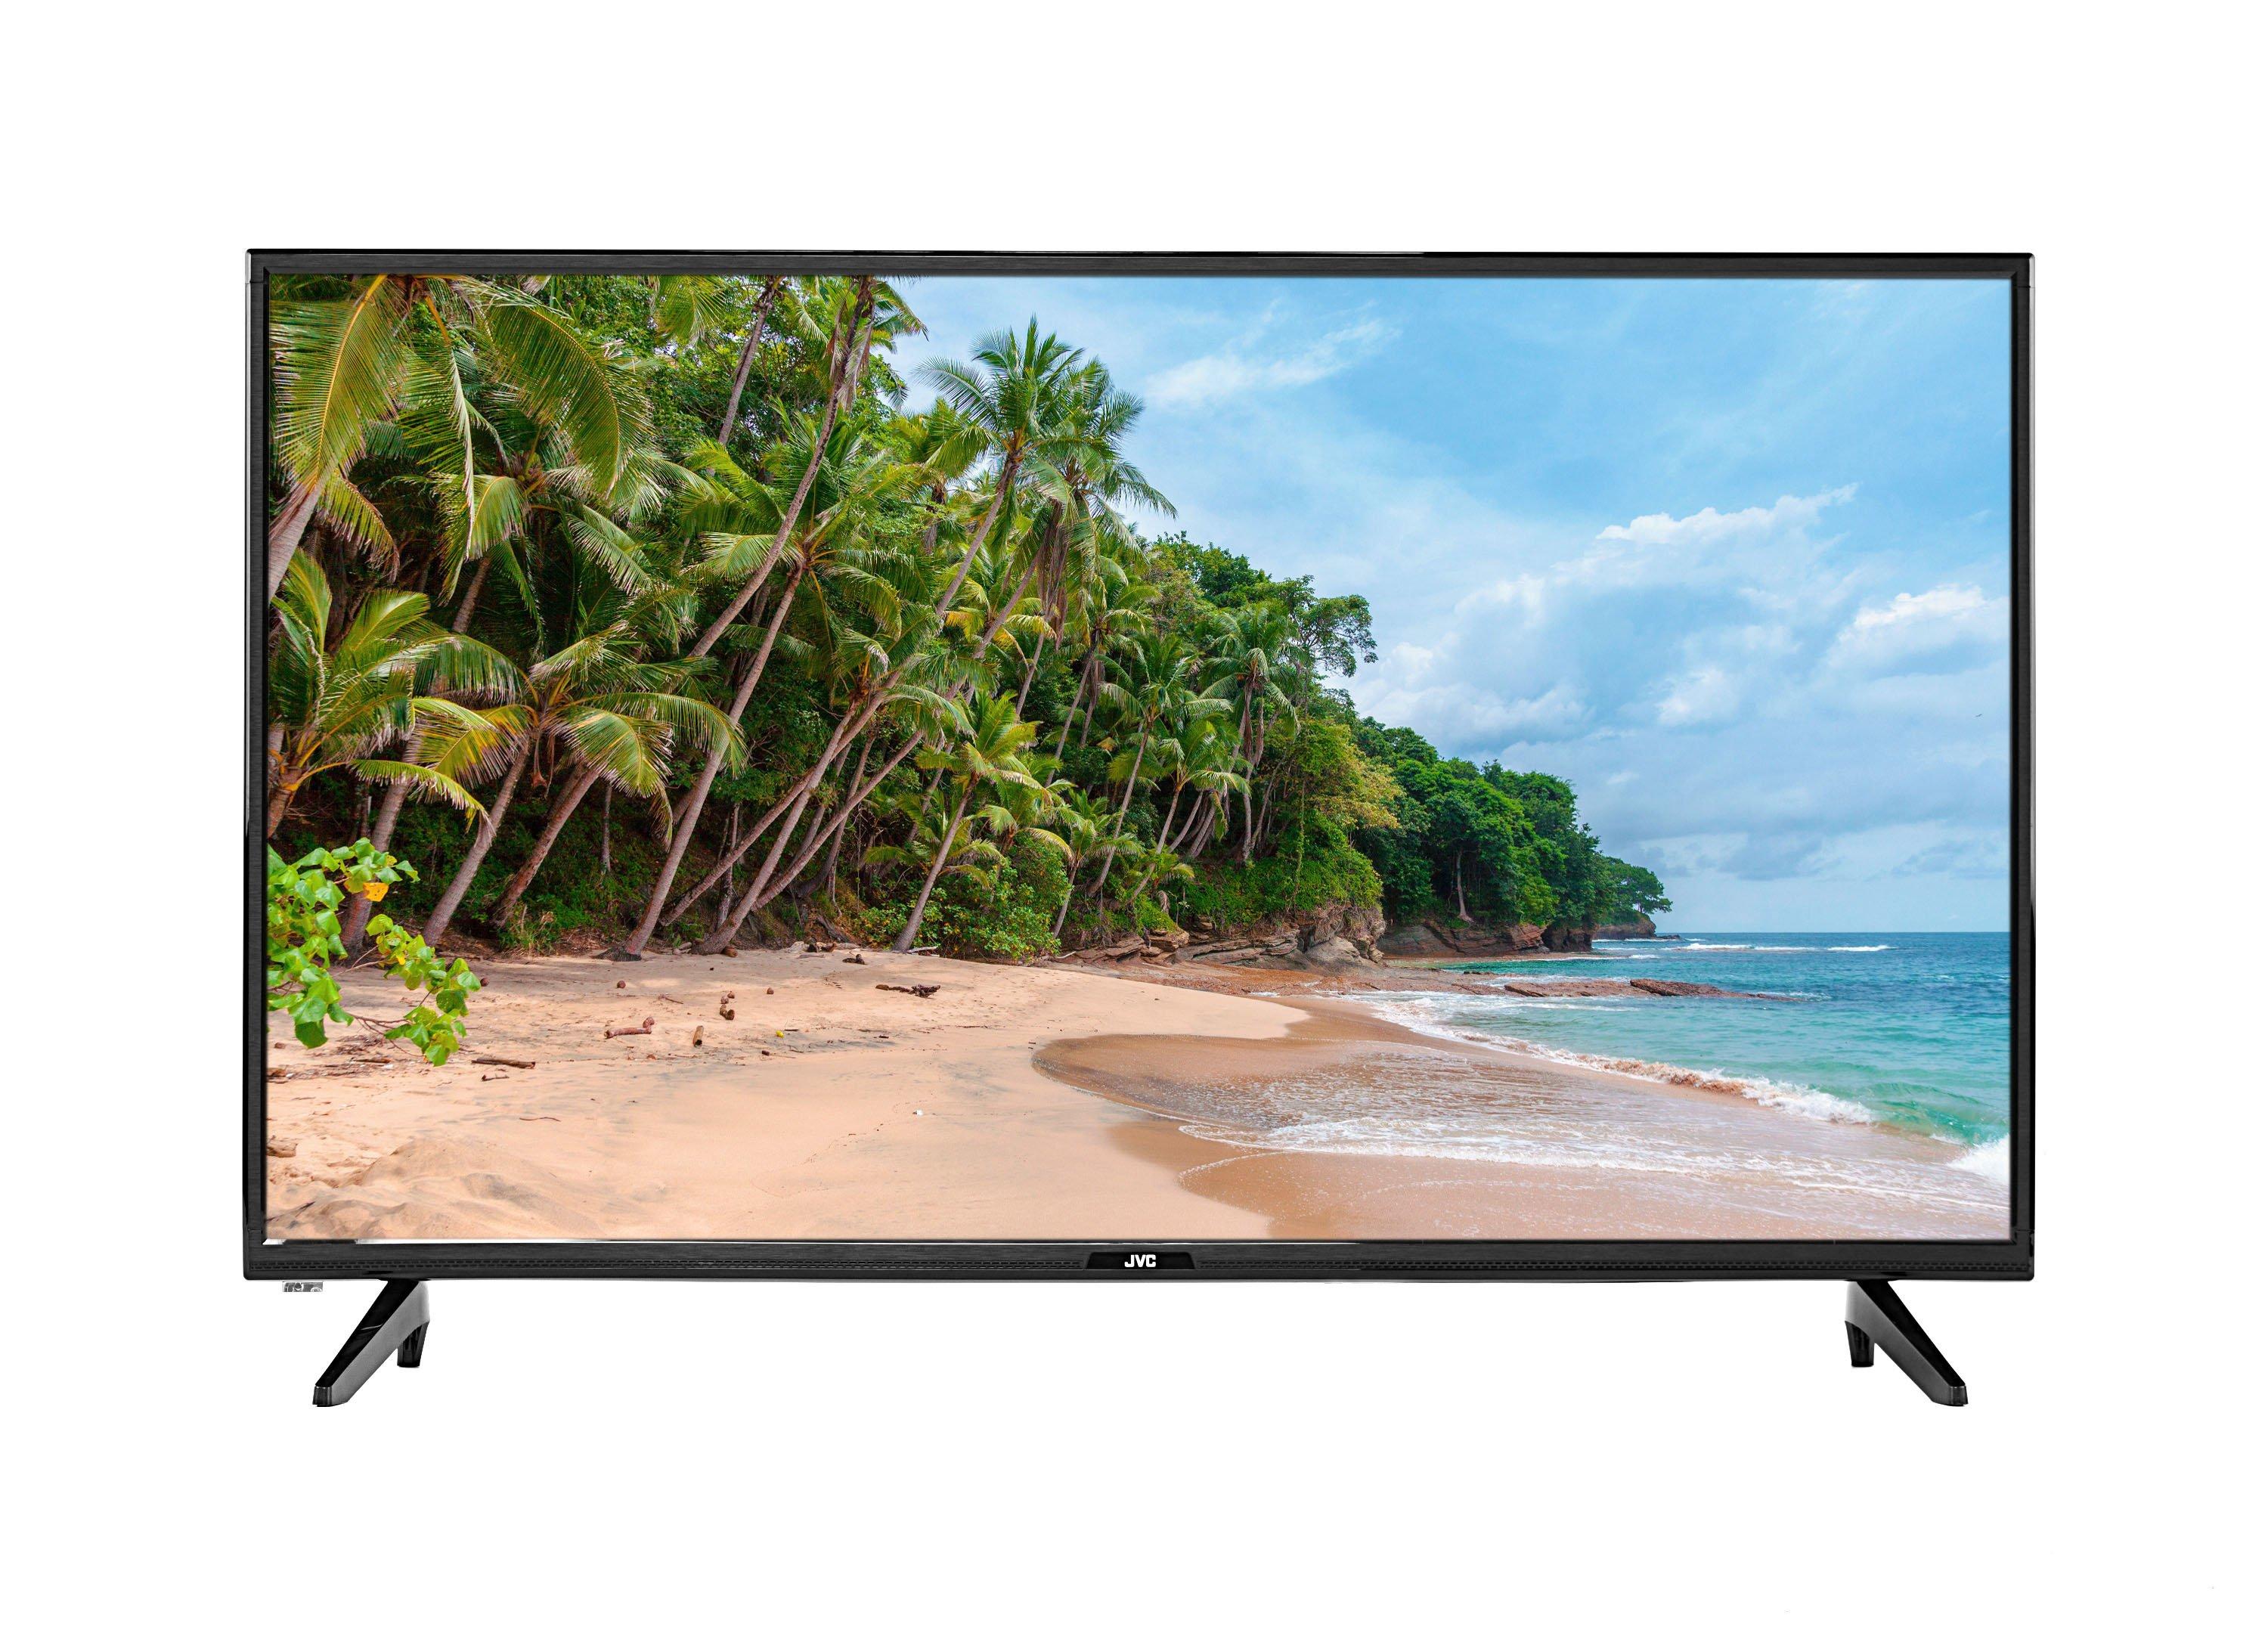 Jvc 40 Inch Smart Led Fhd Tv N595 Price In Saudi Arabia